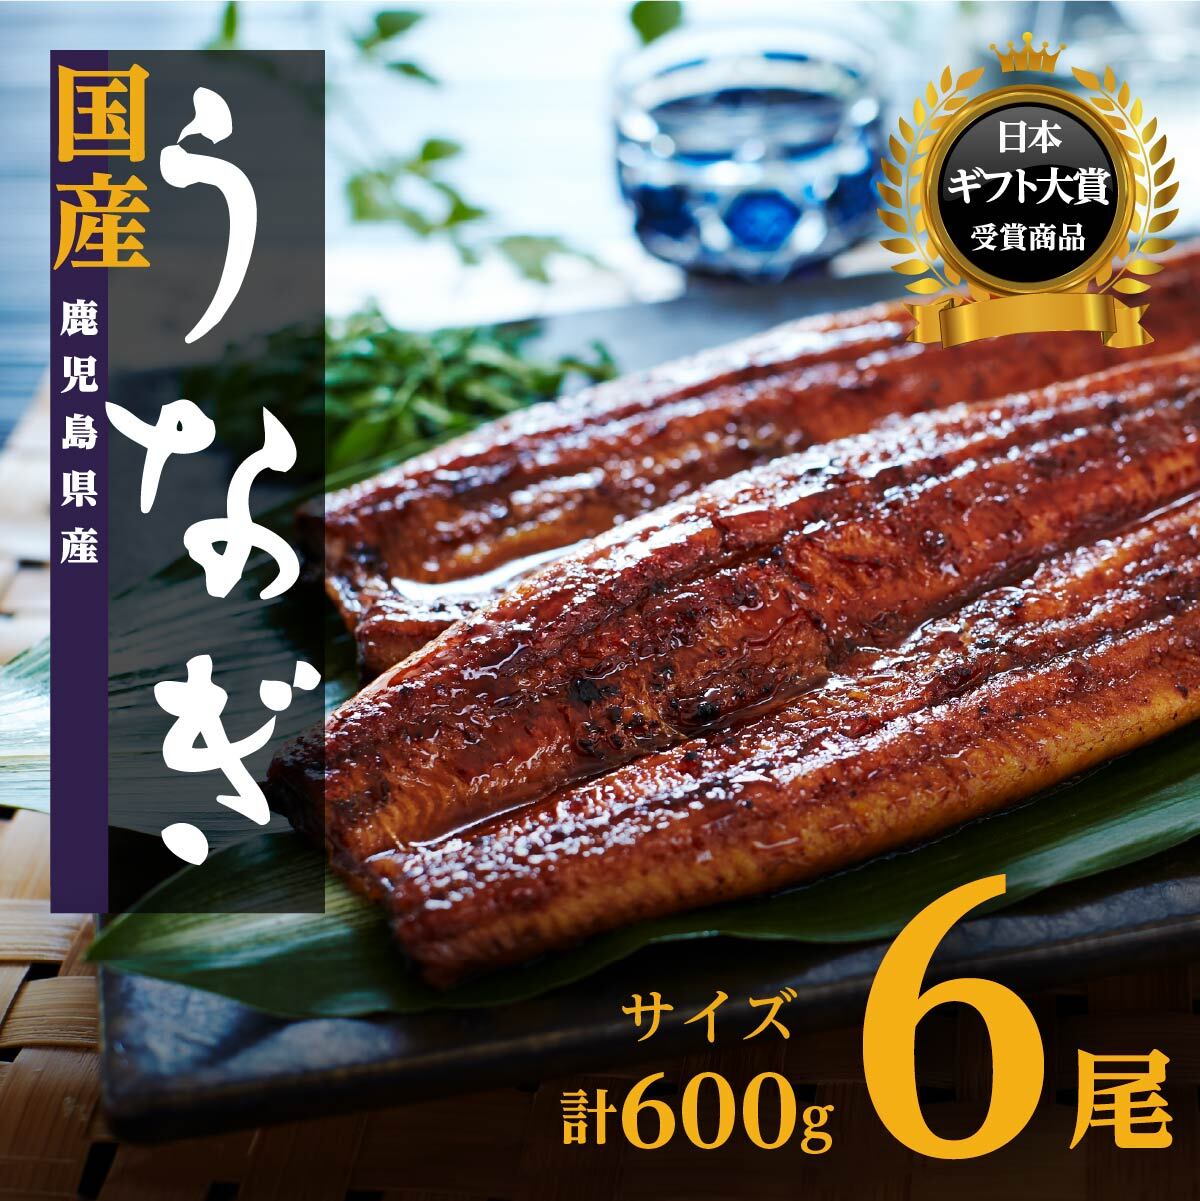 7560円 人気が高い ふるさと納税 飯塚市 魚市場厳選 国産うなぎの蒲焼き 2尾